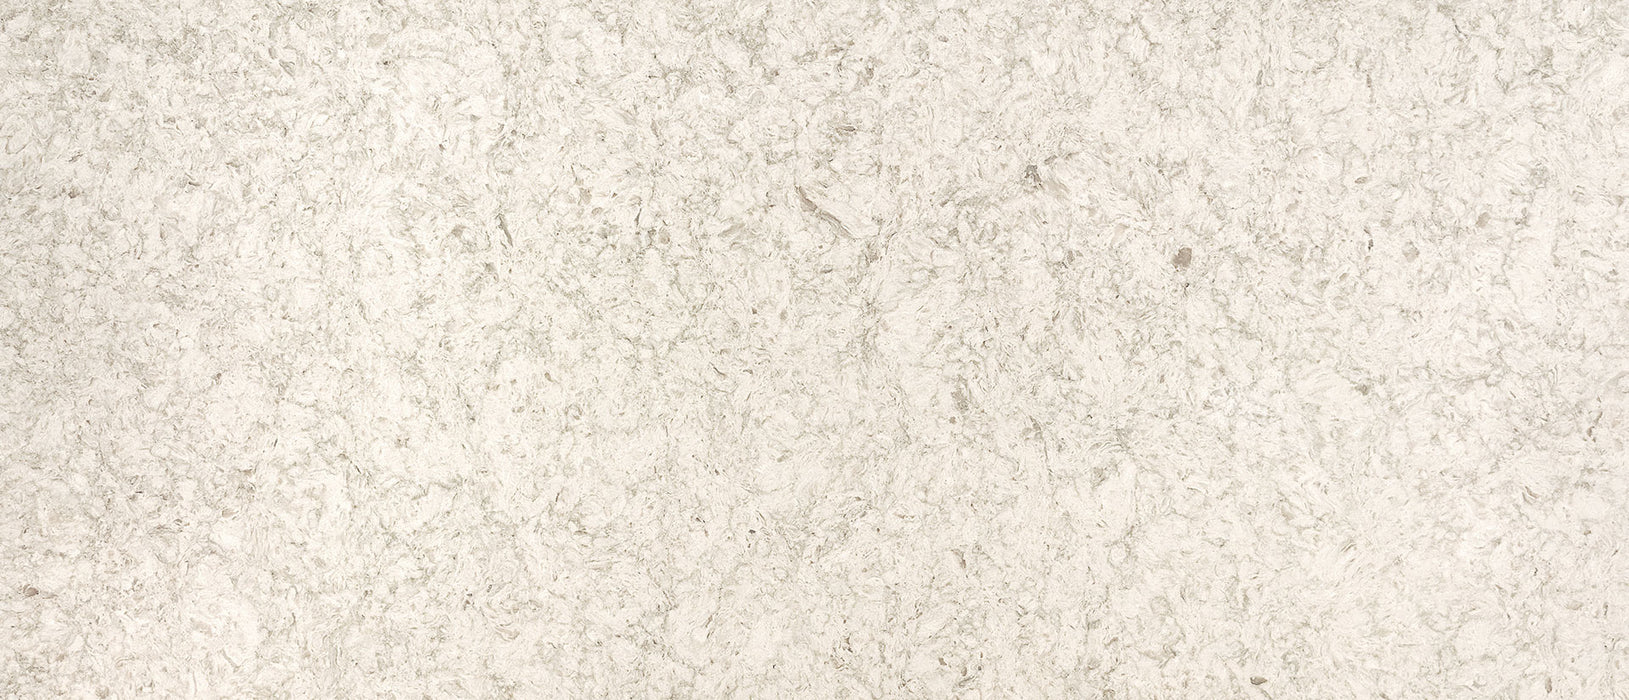 Portico cream quartz countertop slab